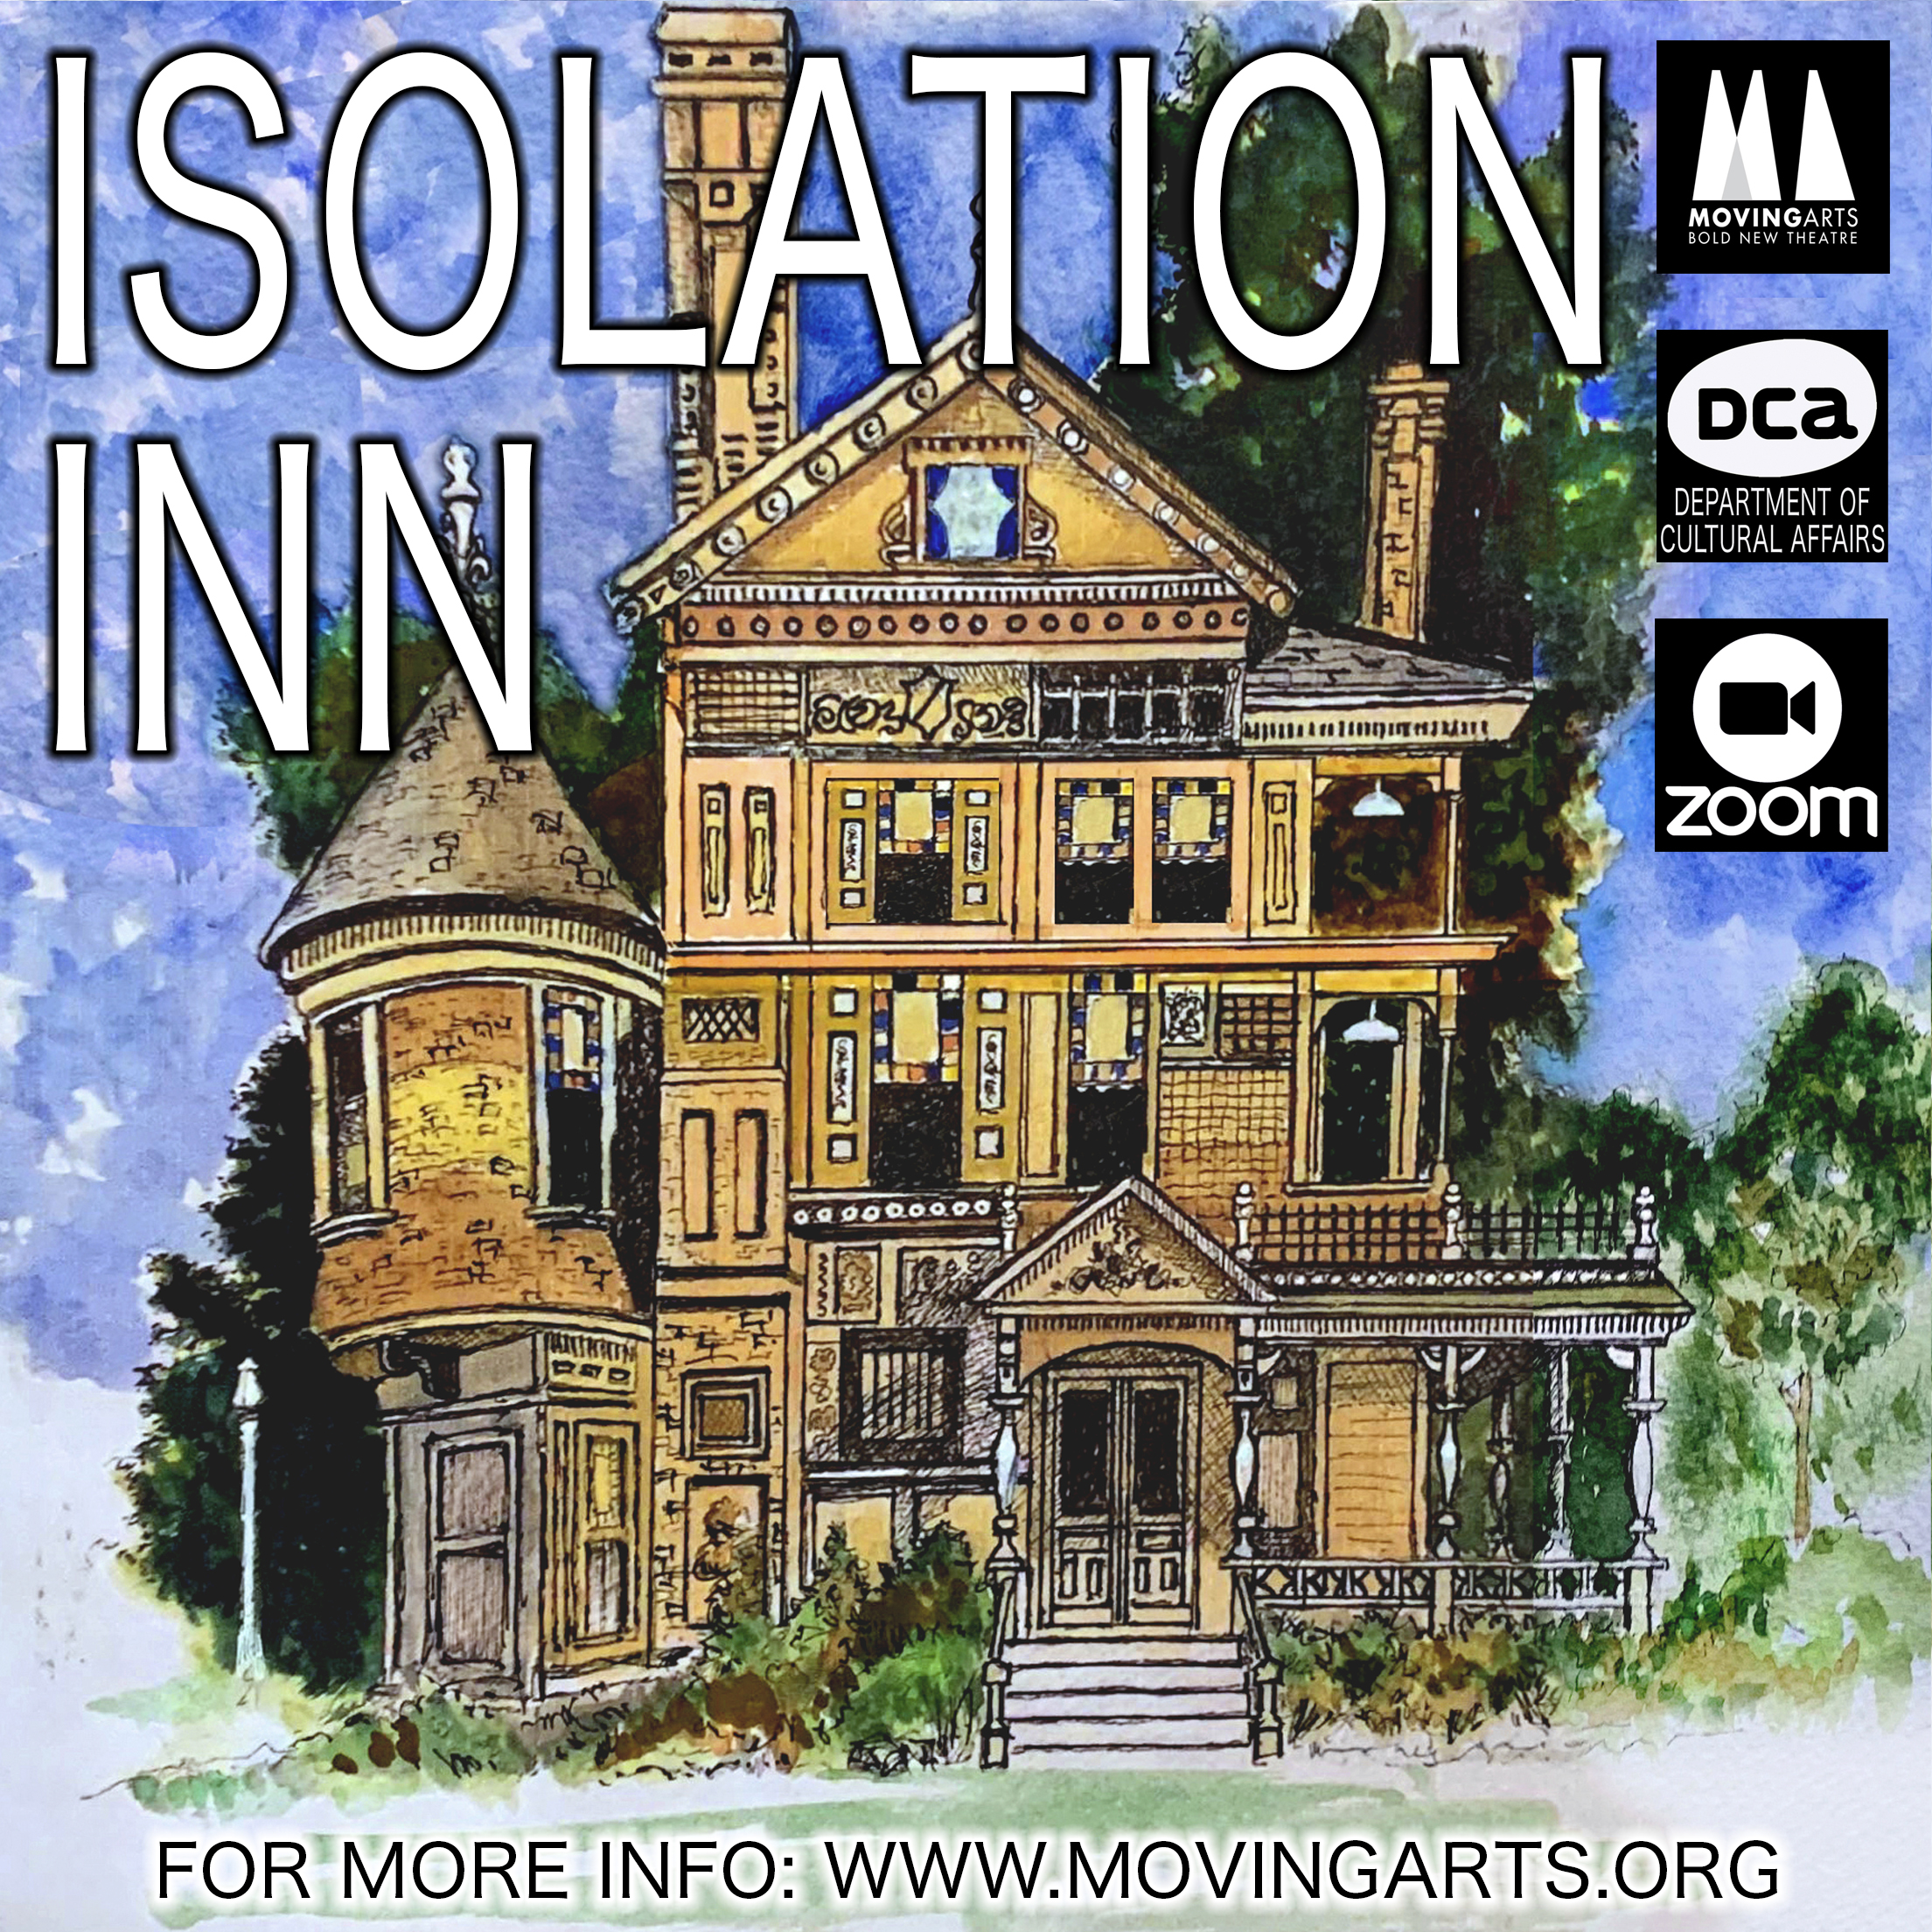 Isolation Inn